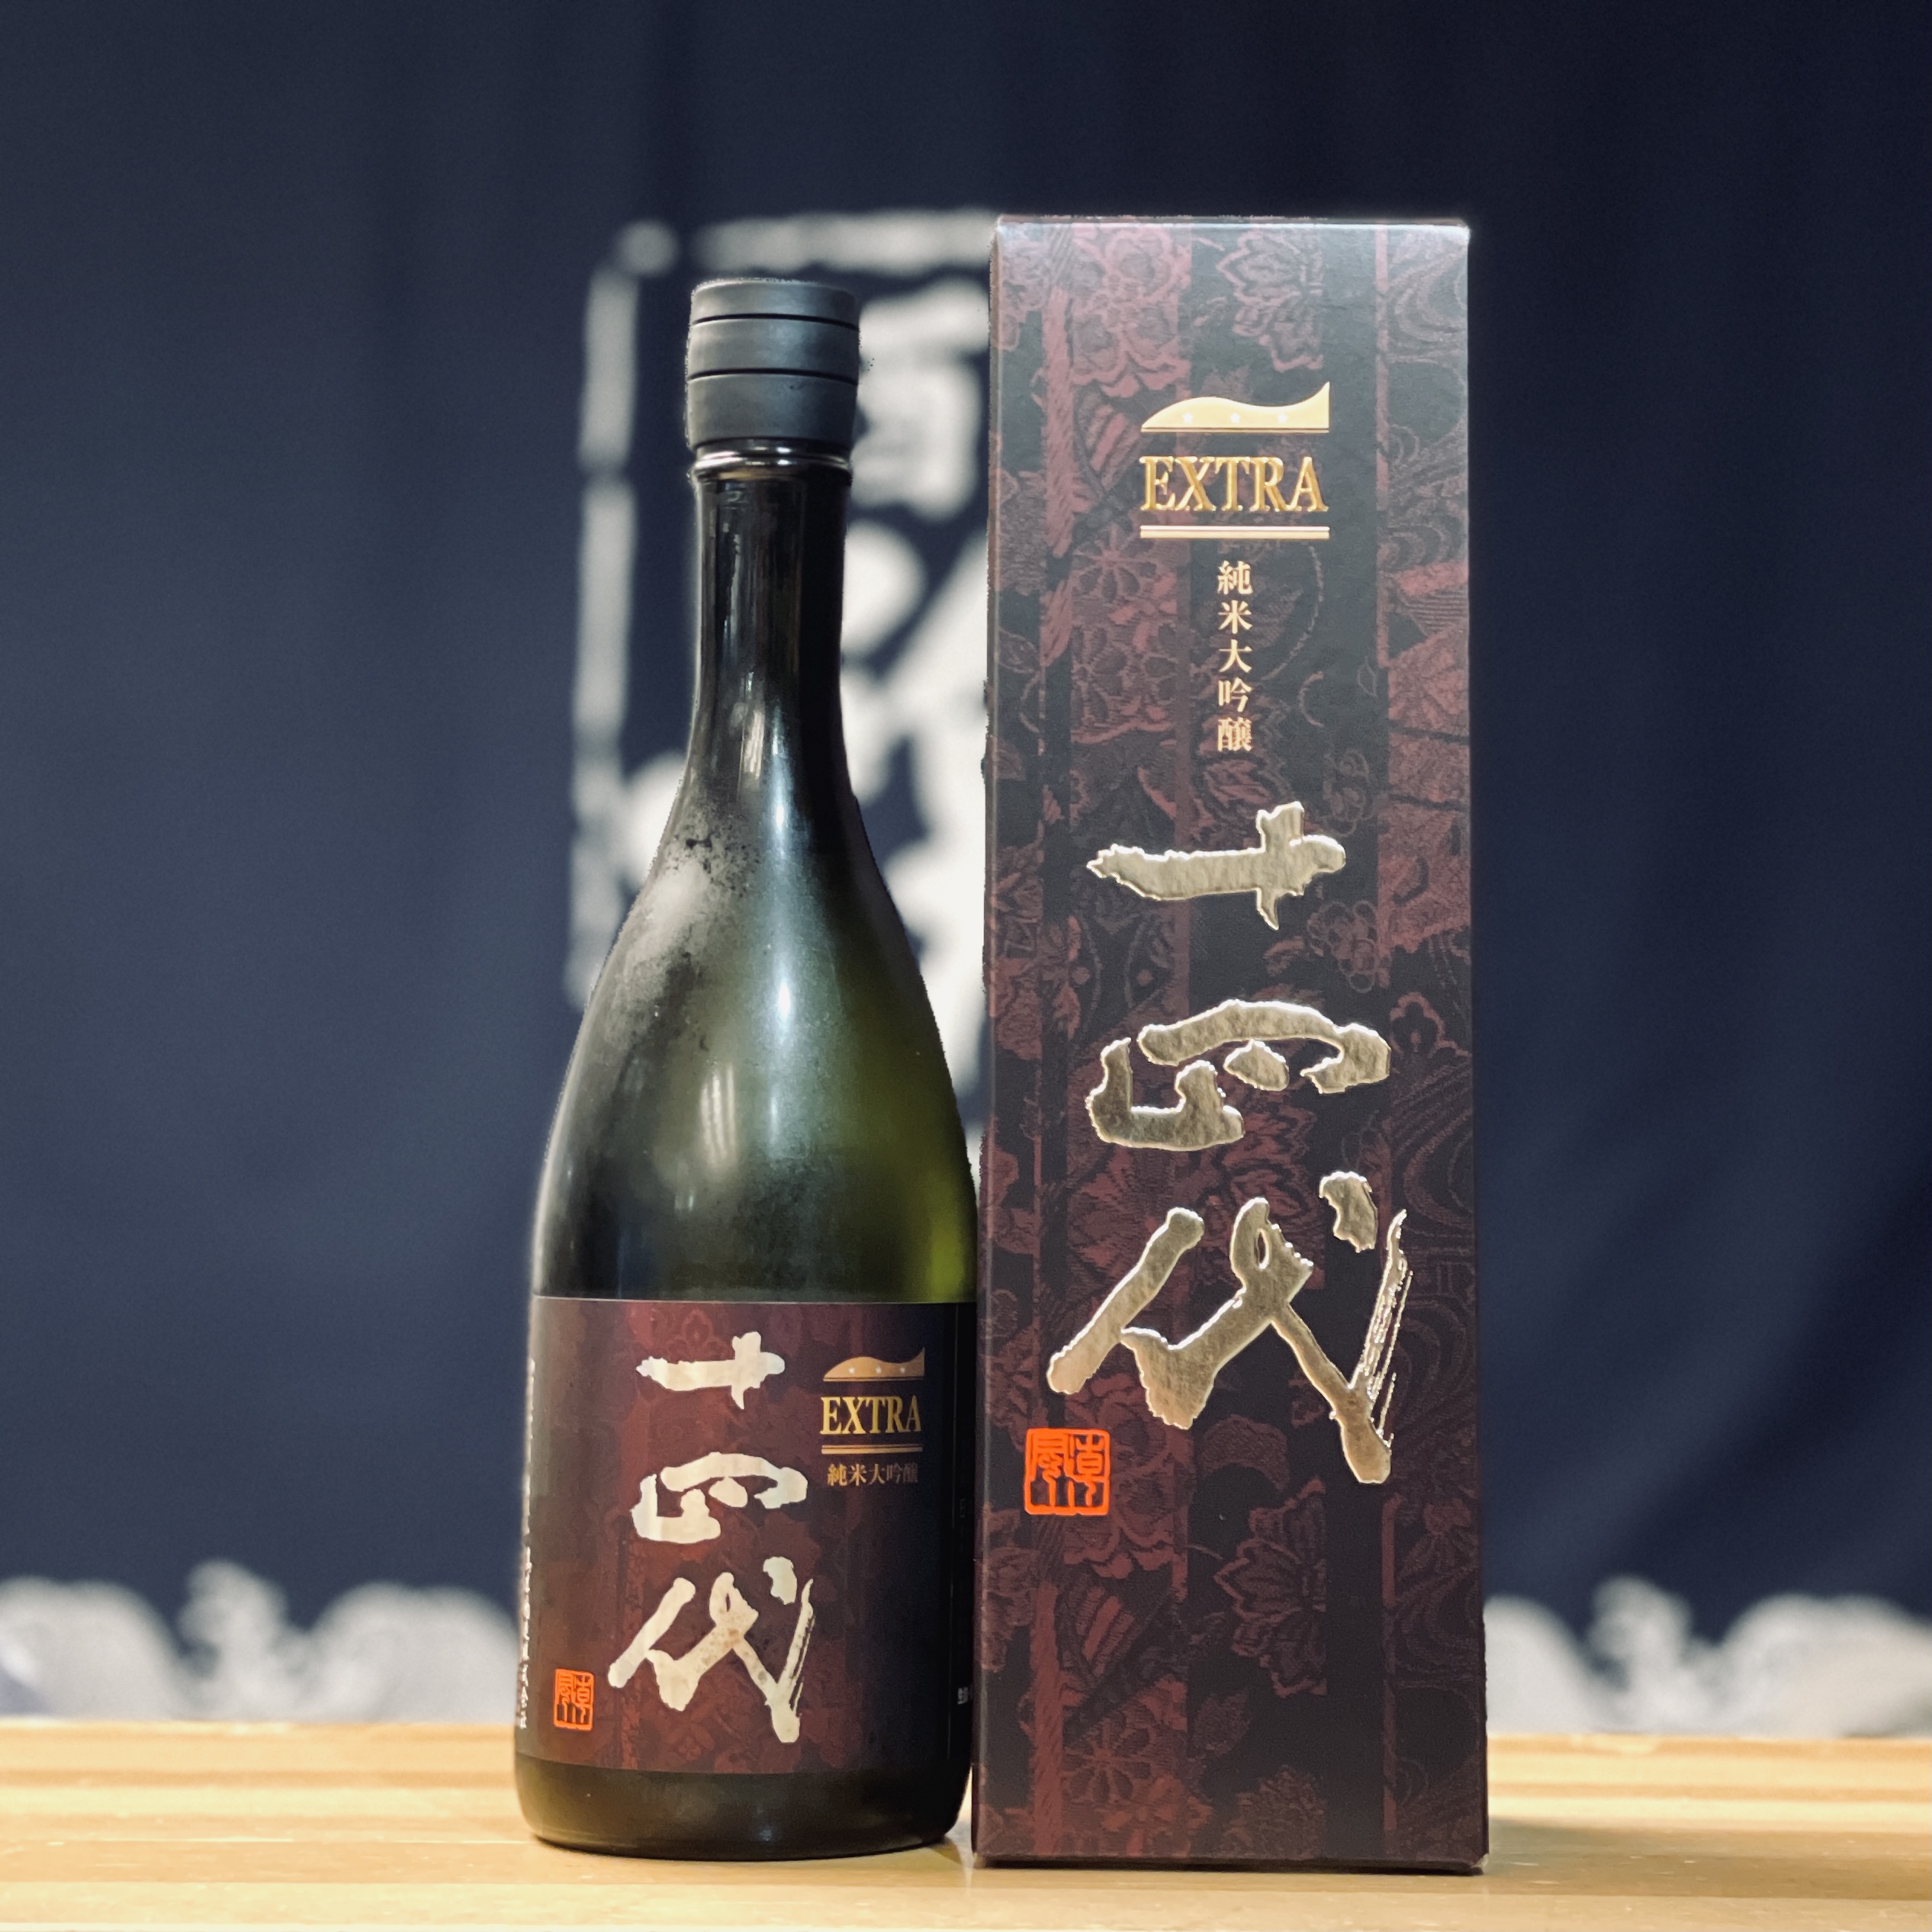 定番国産 日本酒 十四代 エクストラ大吟醸の 安い最安値